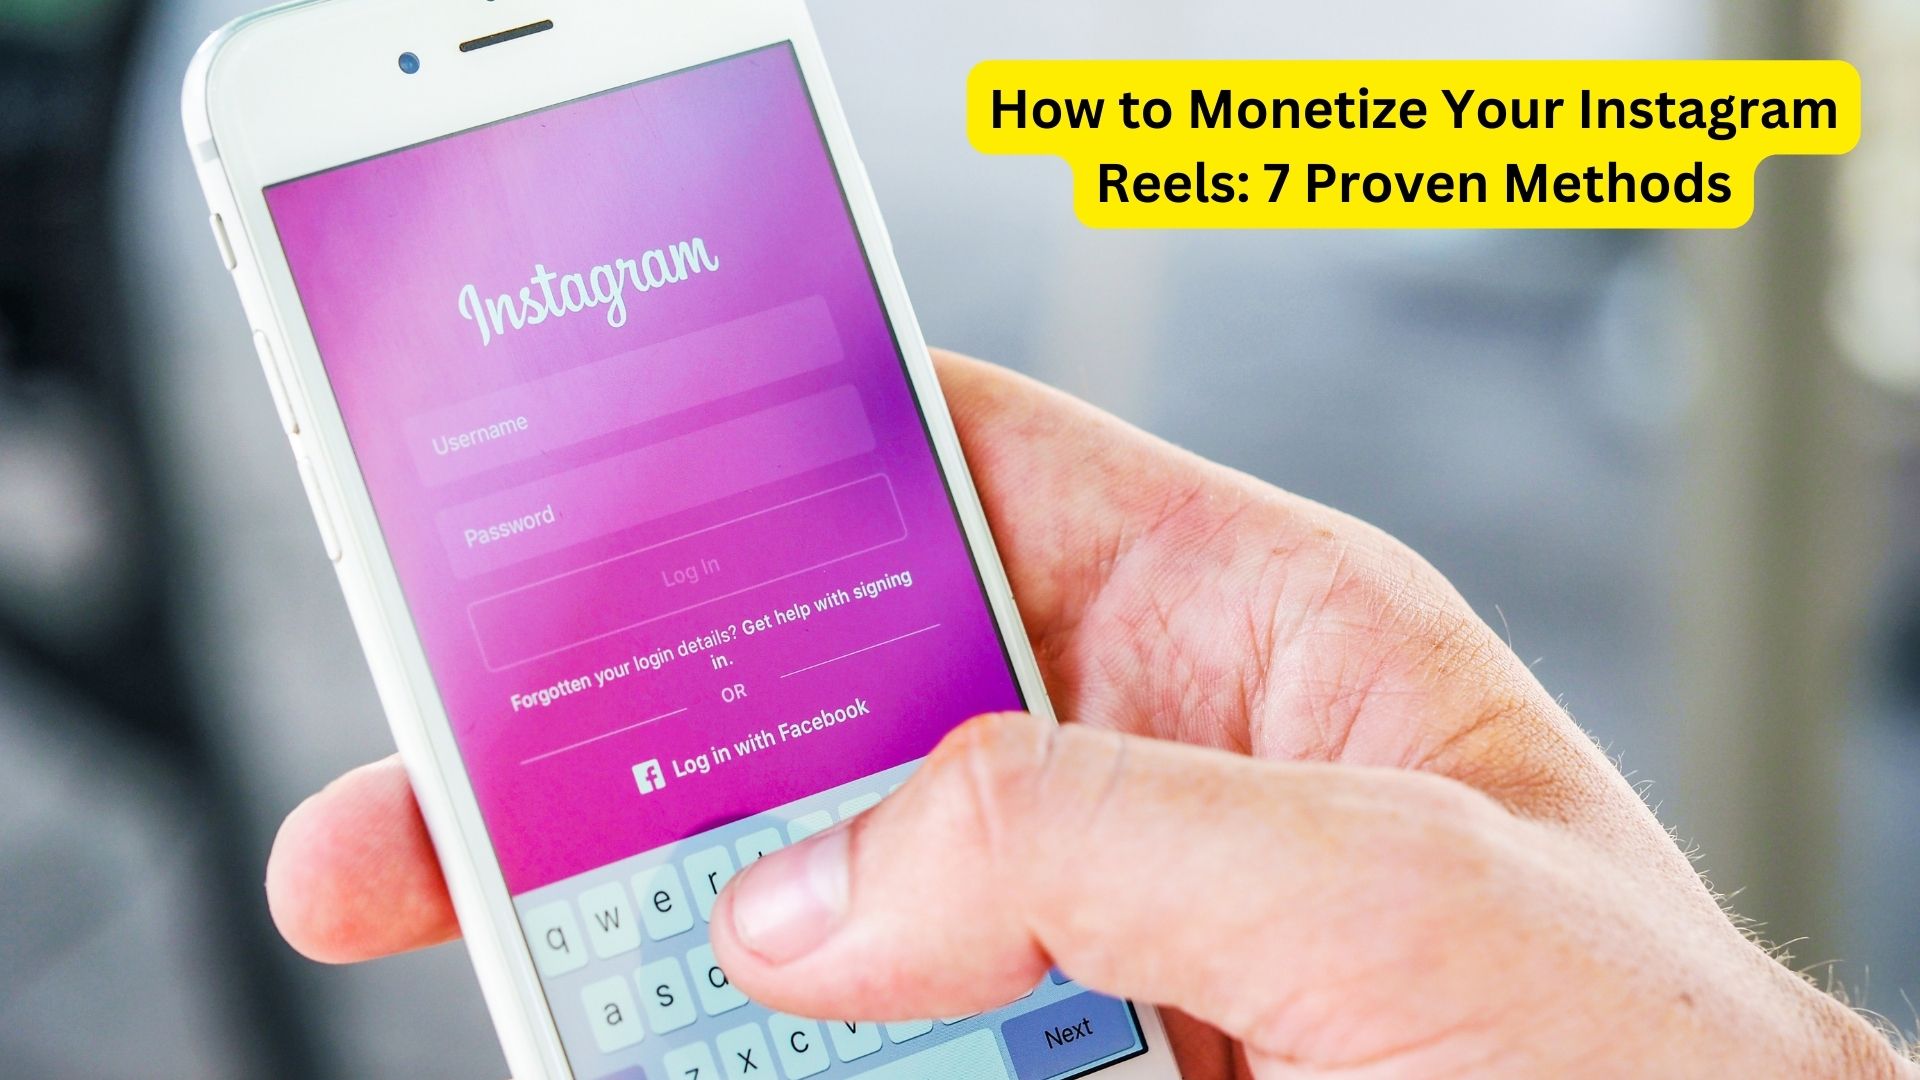 How to Monetize Your Instagram Reels: 7 Proven Methods